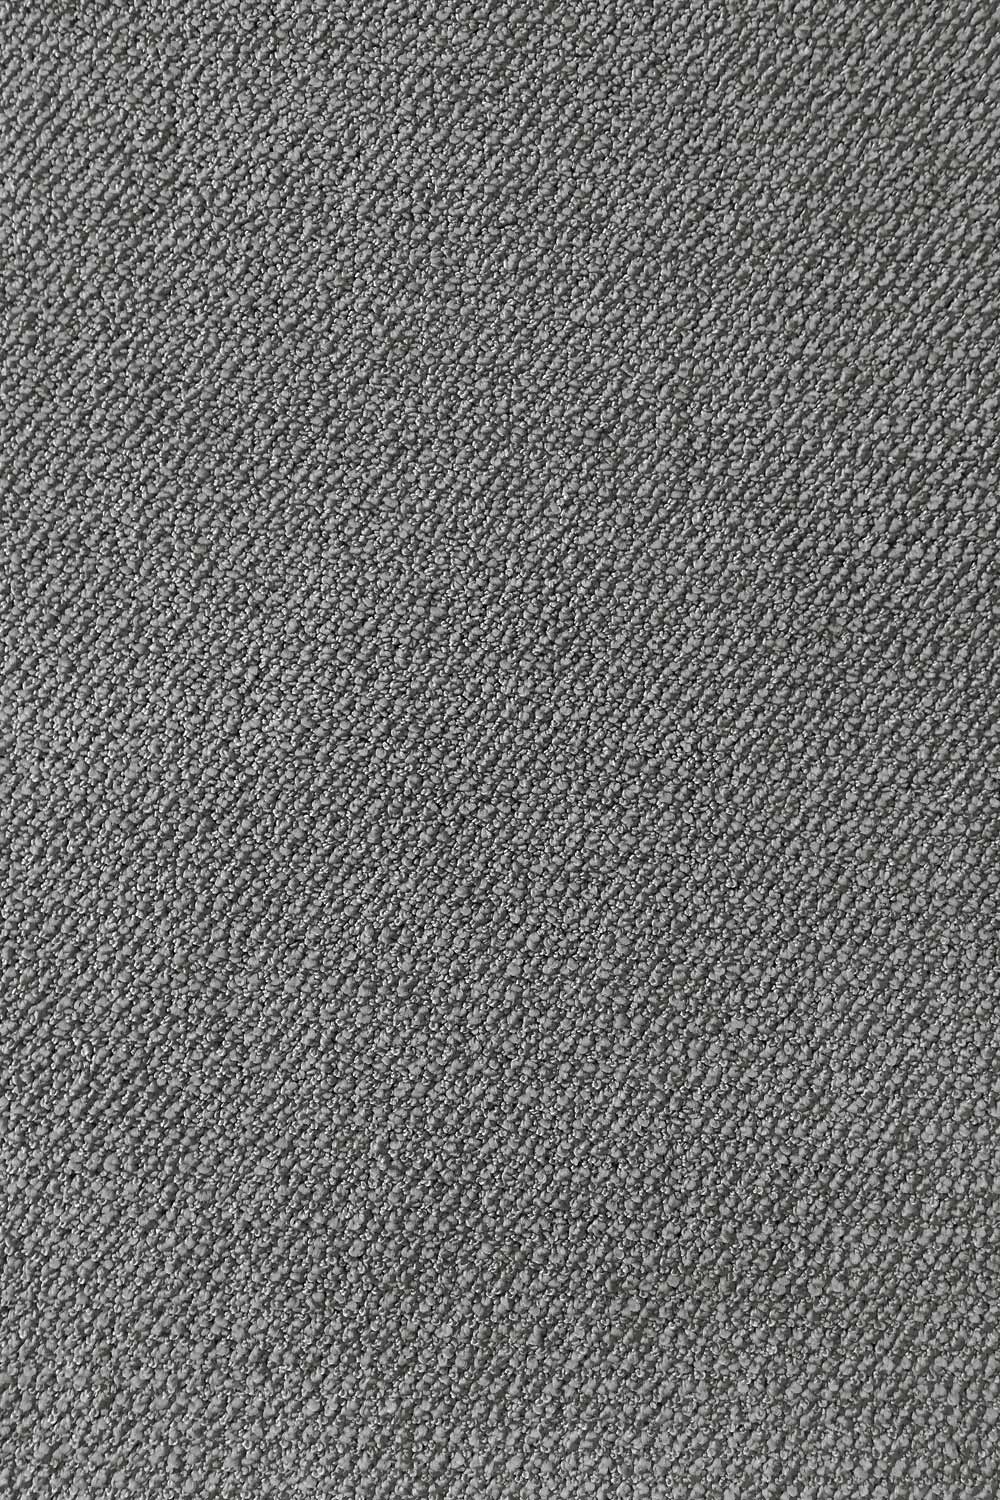 Metrážový koberec Corvino 96 400 cm